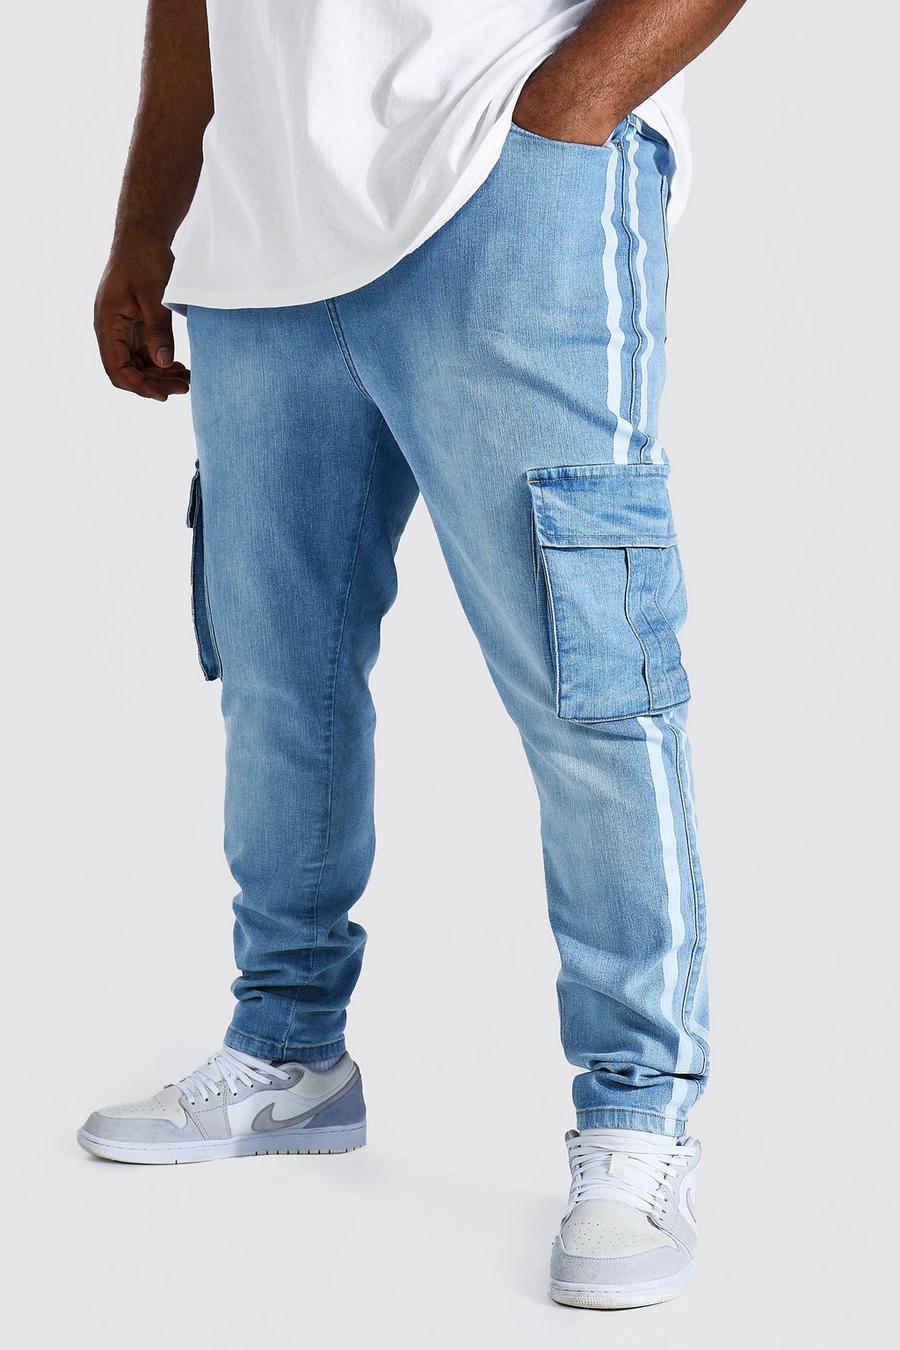 כחול קרח ג'ינס סופר סקיני דגמ"ח עם פס בצד, מידות גדולות image number 1